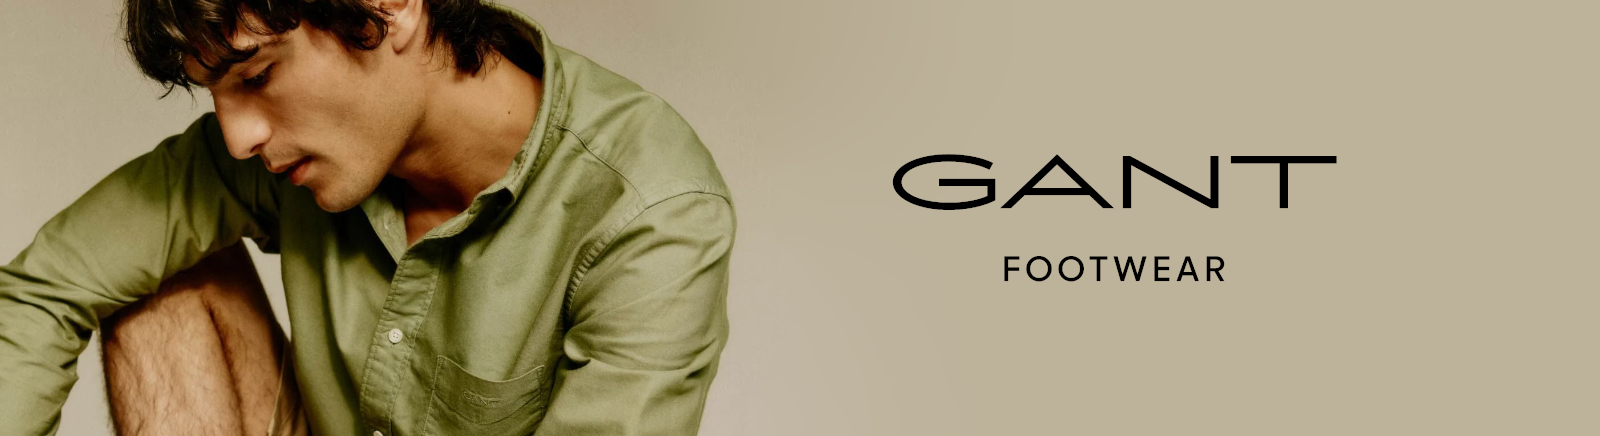 Prange: Gant Slipper für Herren online shoppen